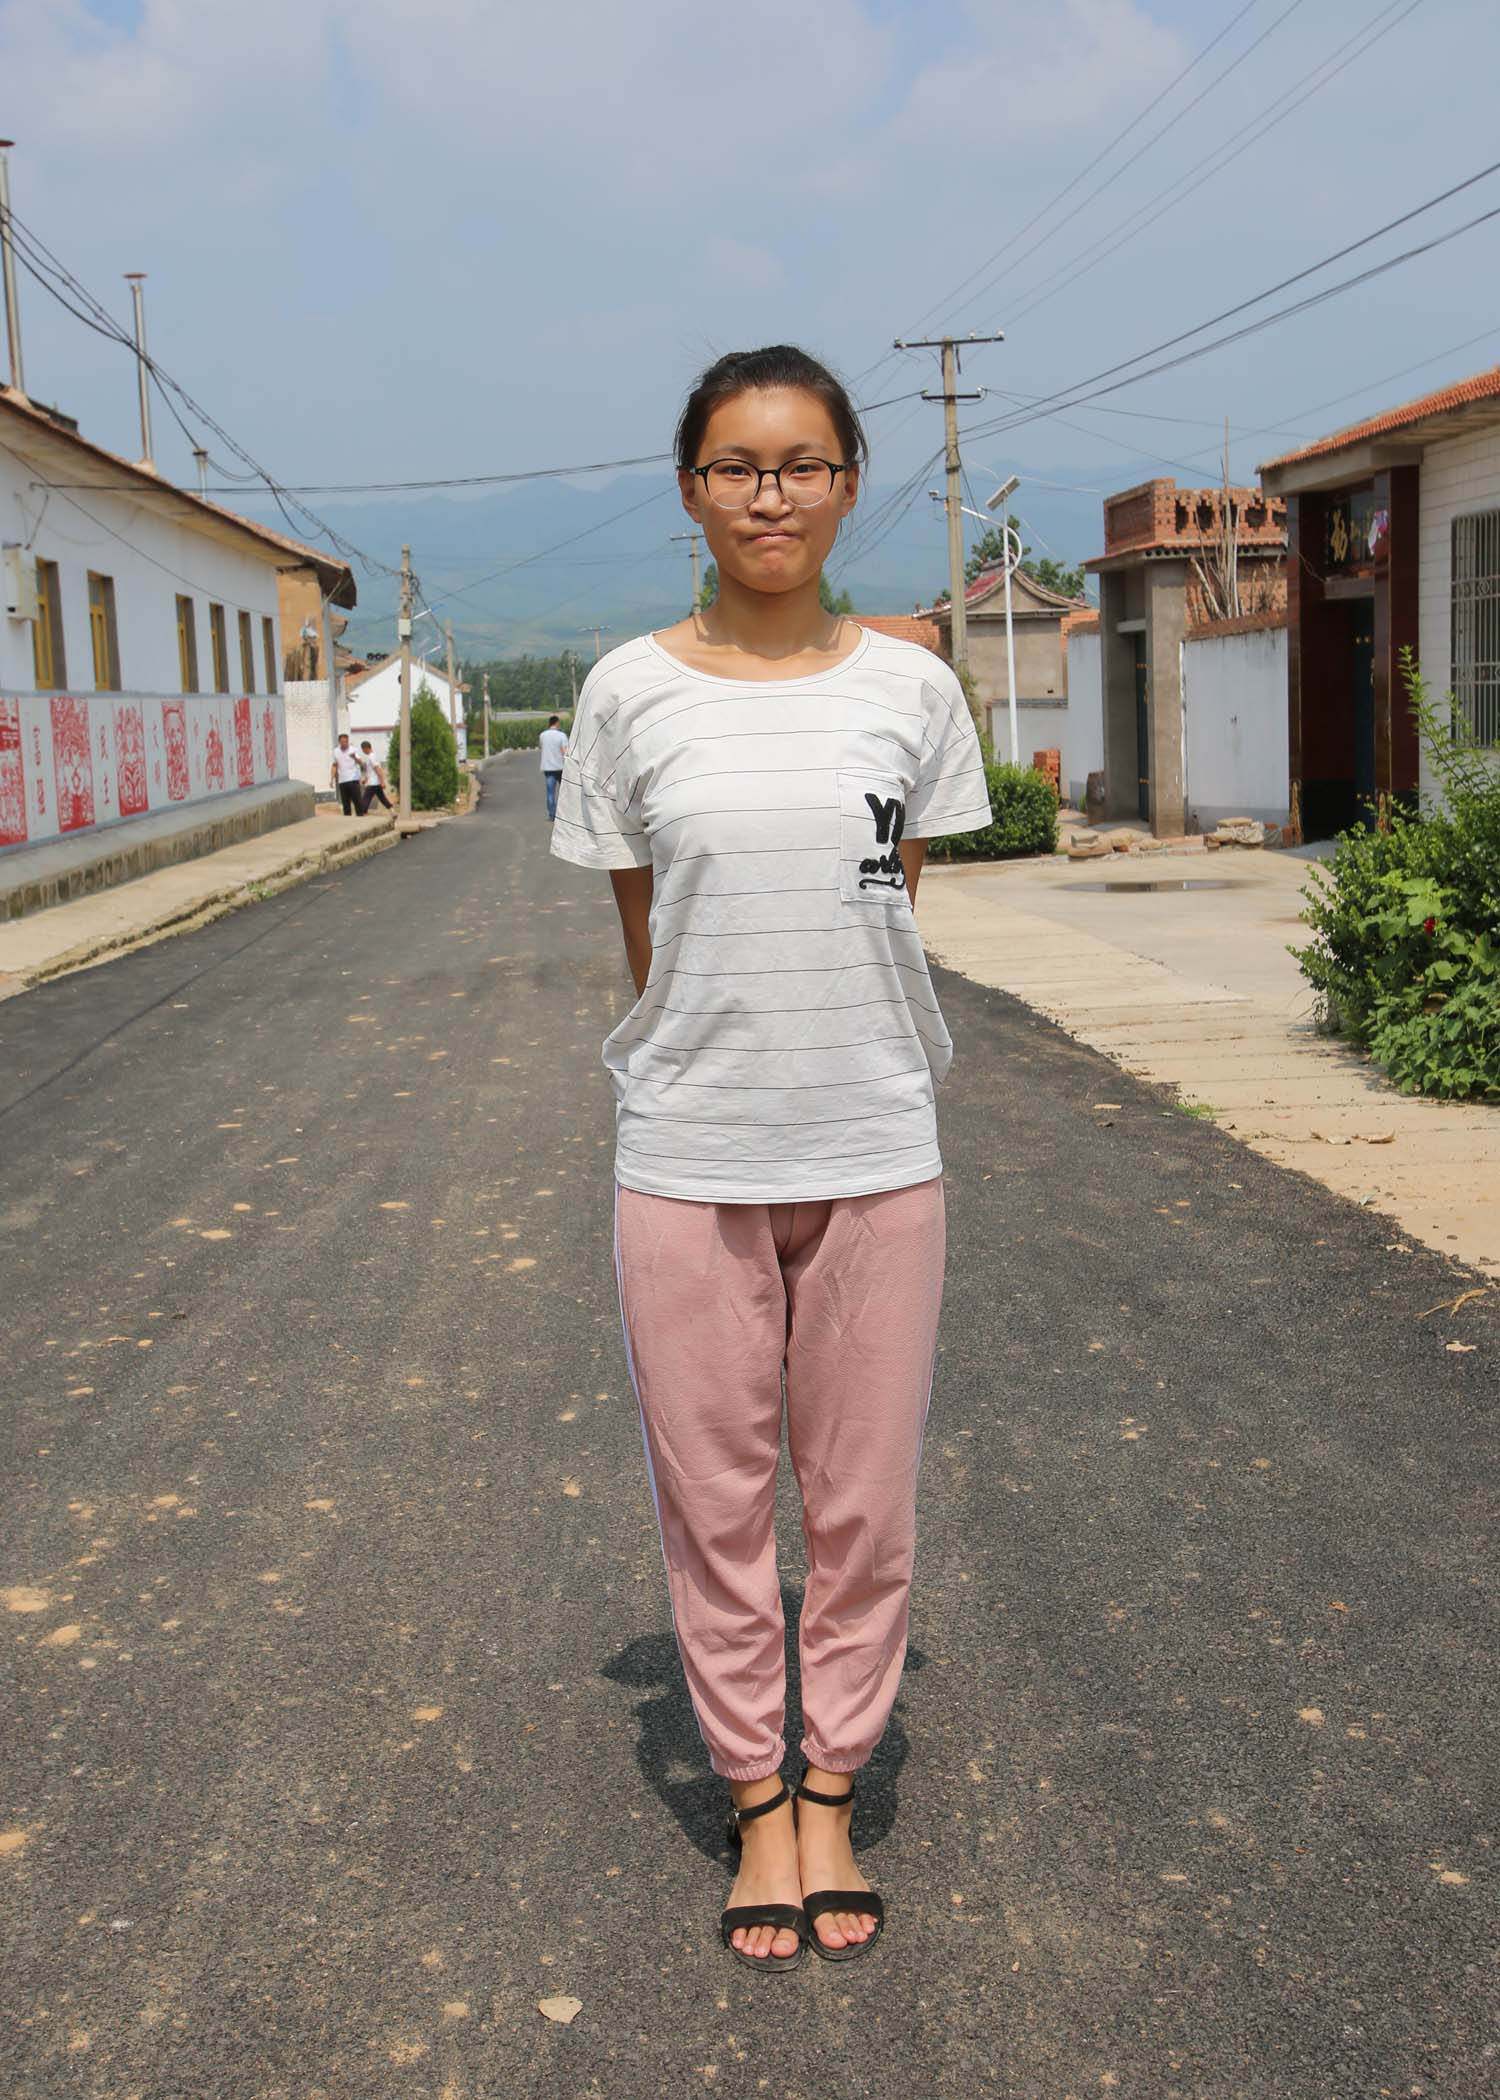 朱秀珍,62岁,弱智,无劳动能力和收入来源,图片里戴眼镜的是她女儿,冯